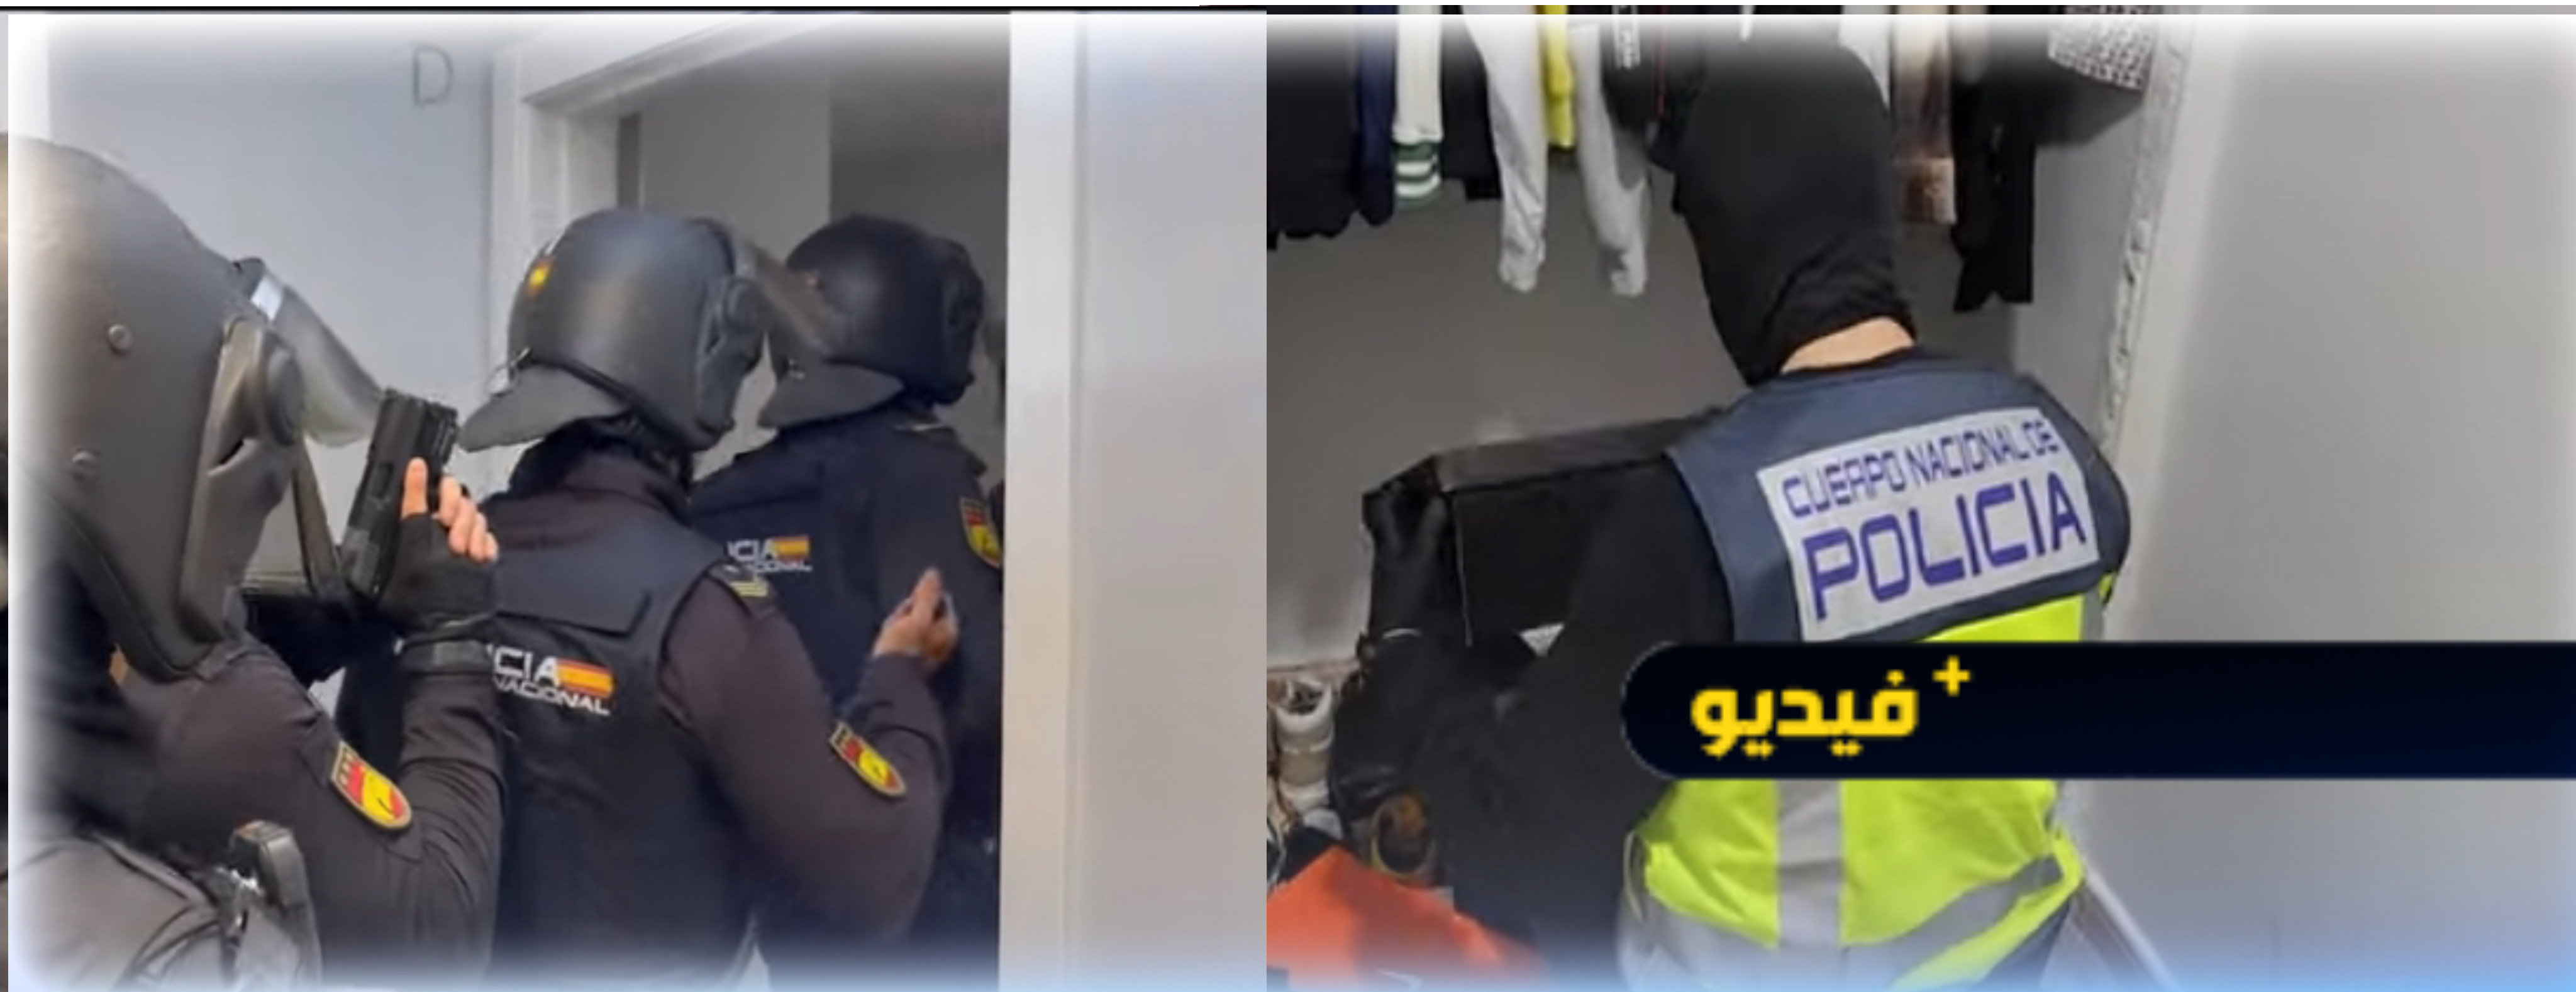 فيديو مثير لعملية تفكيك العصابة المختصة في السطو على منازل نجوم كرة القدم باسبانيا